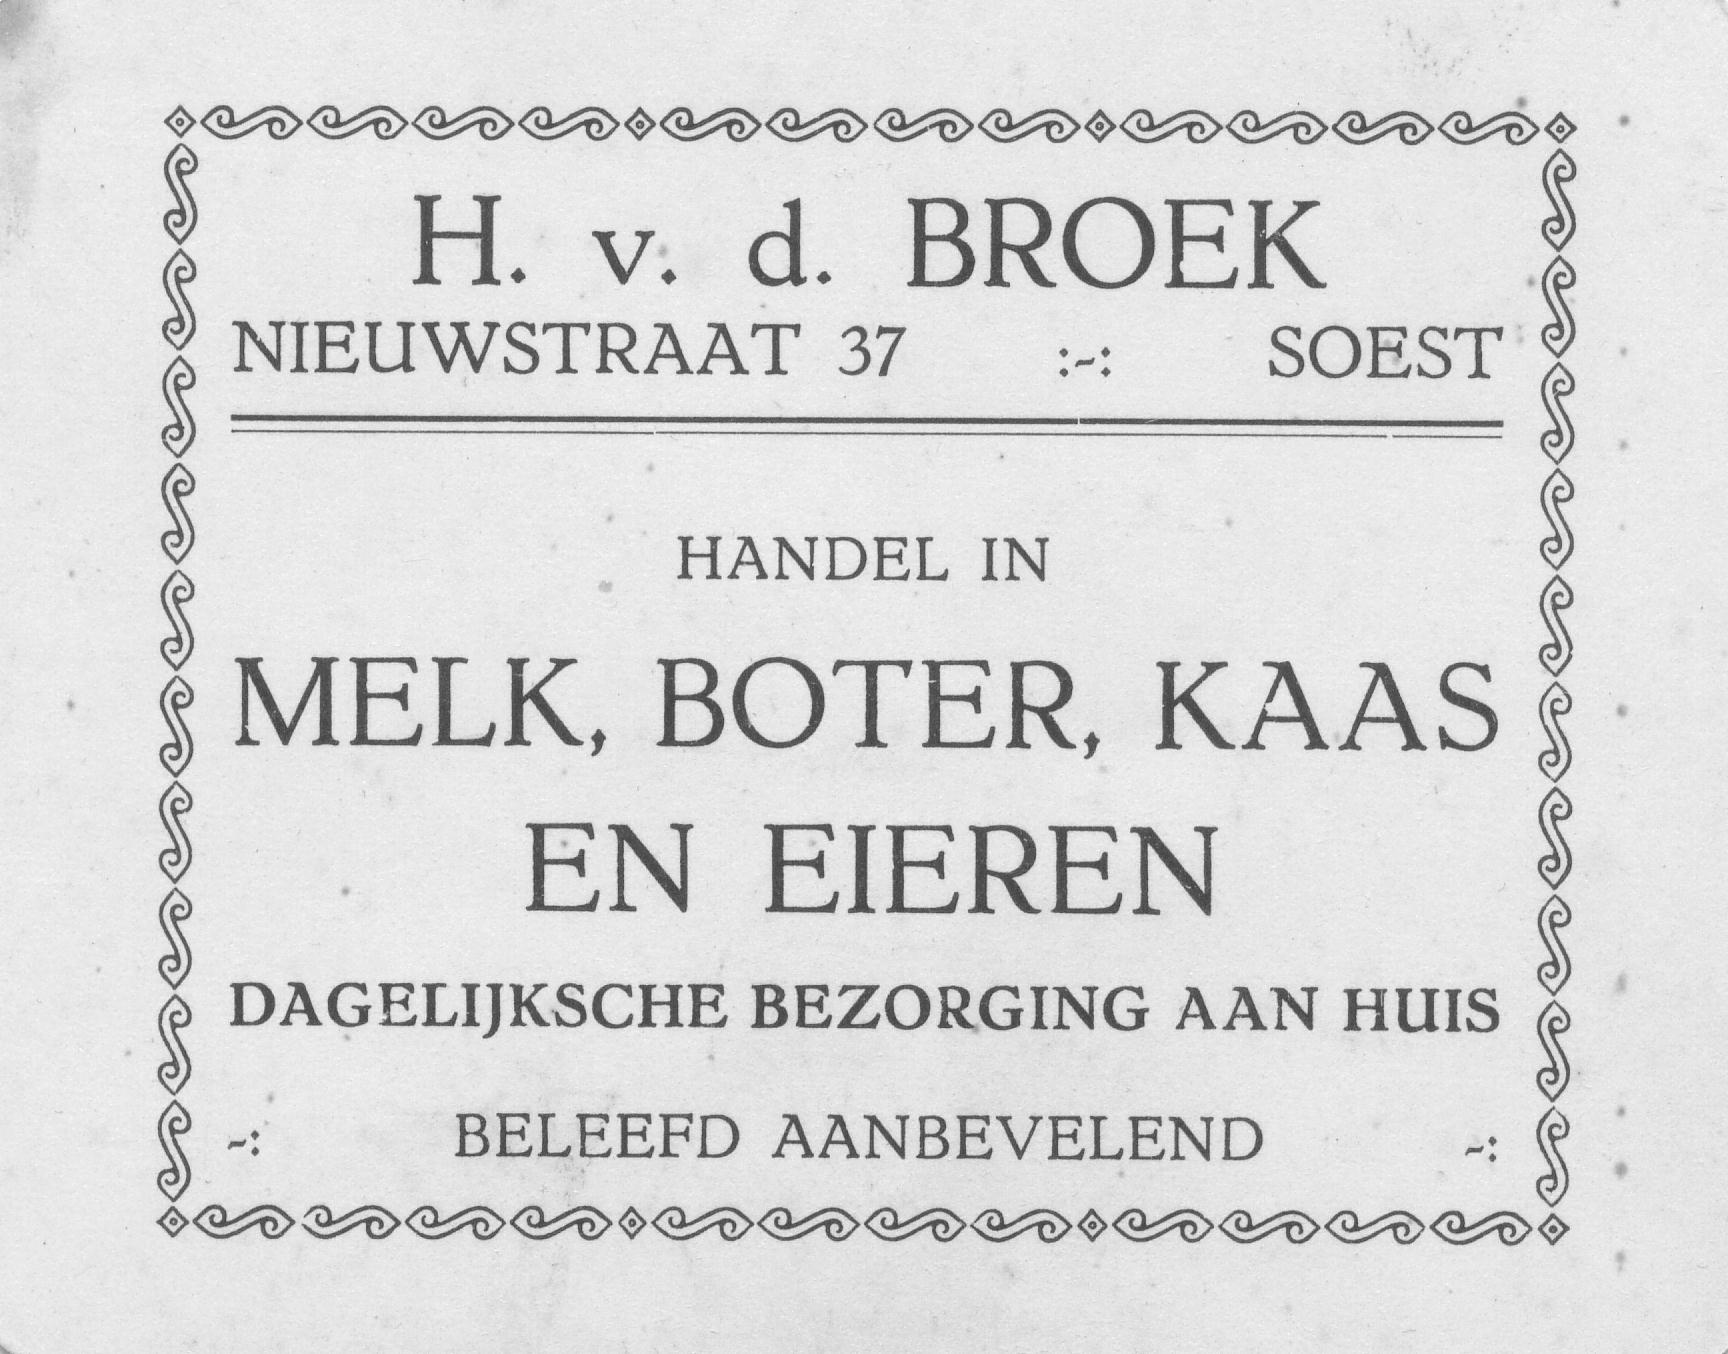 hermanus_v_d_broek_1894.jpg